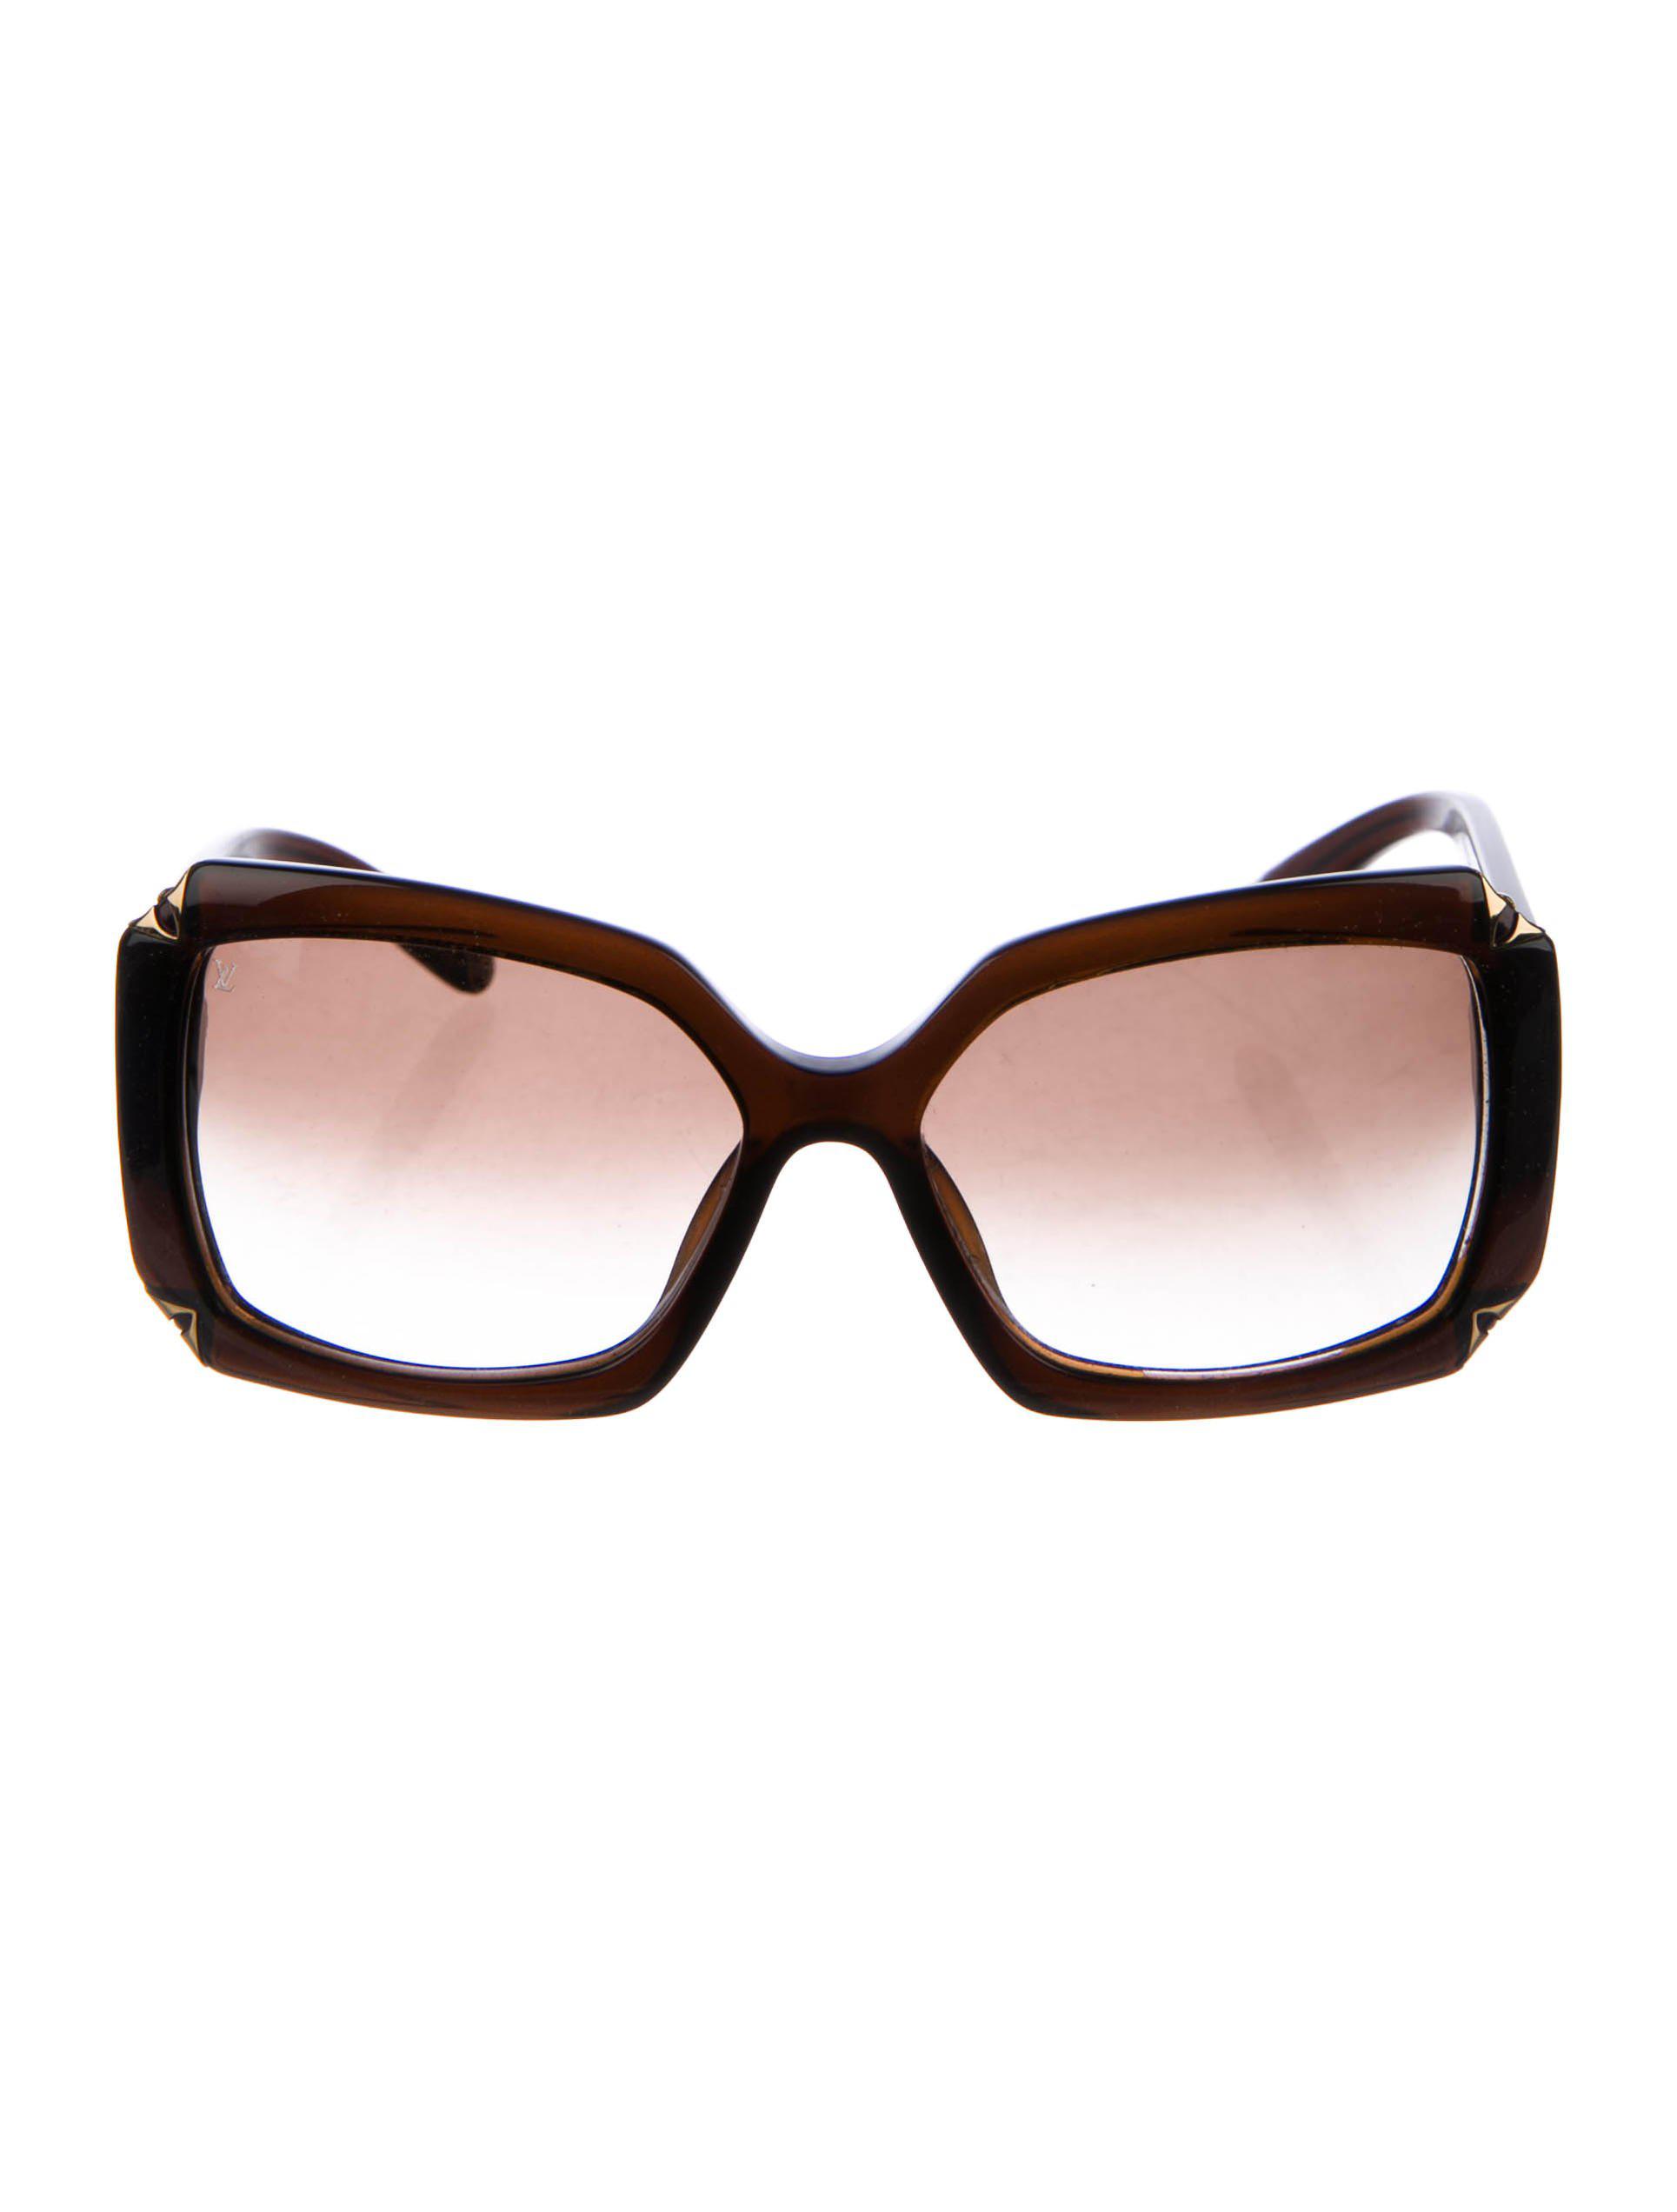 Louis Vuitton Sunglasses Lv Print